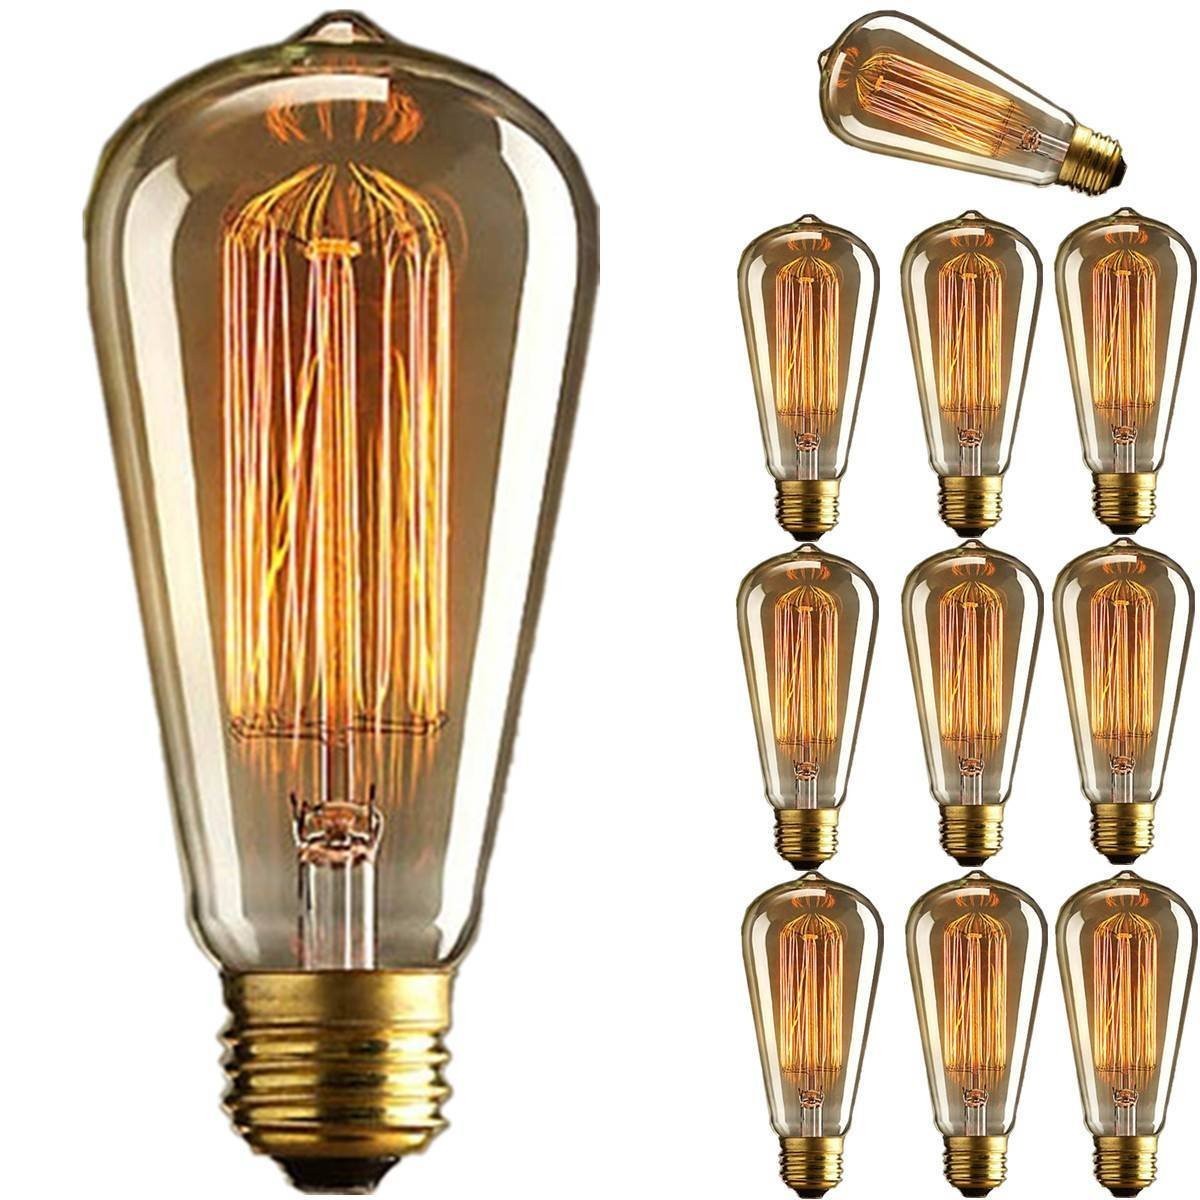 Kingso-2Pcs-110v-60w-Edison-Retro-Series-Tungsten-Lamp-Straight-Wire-1890774-1